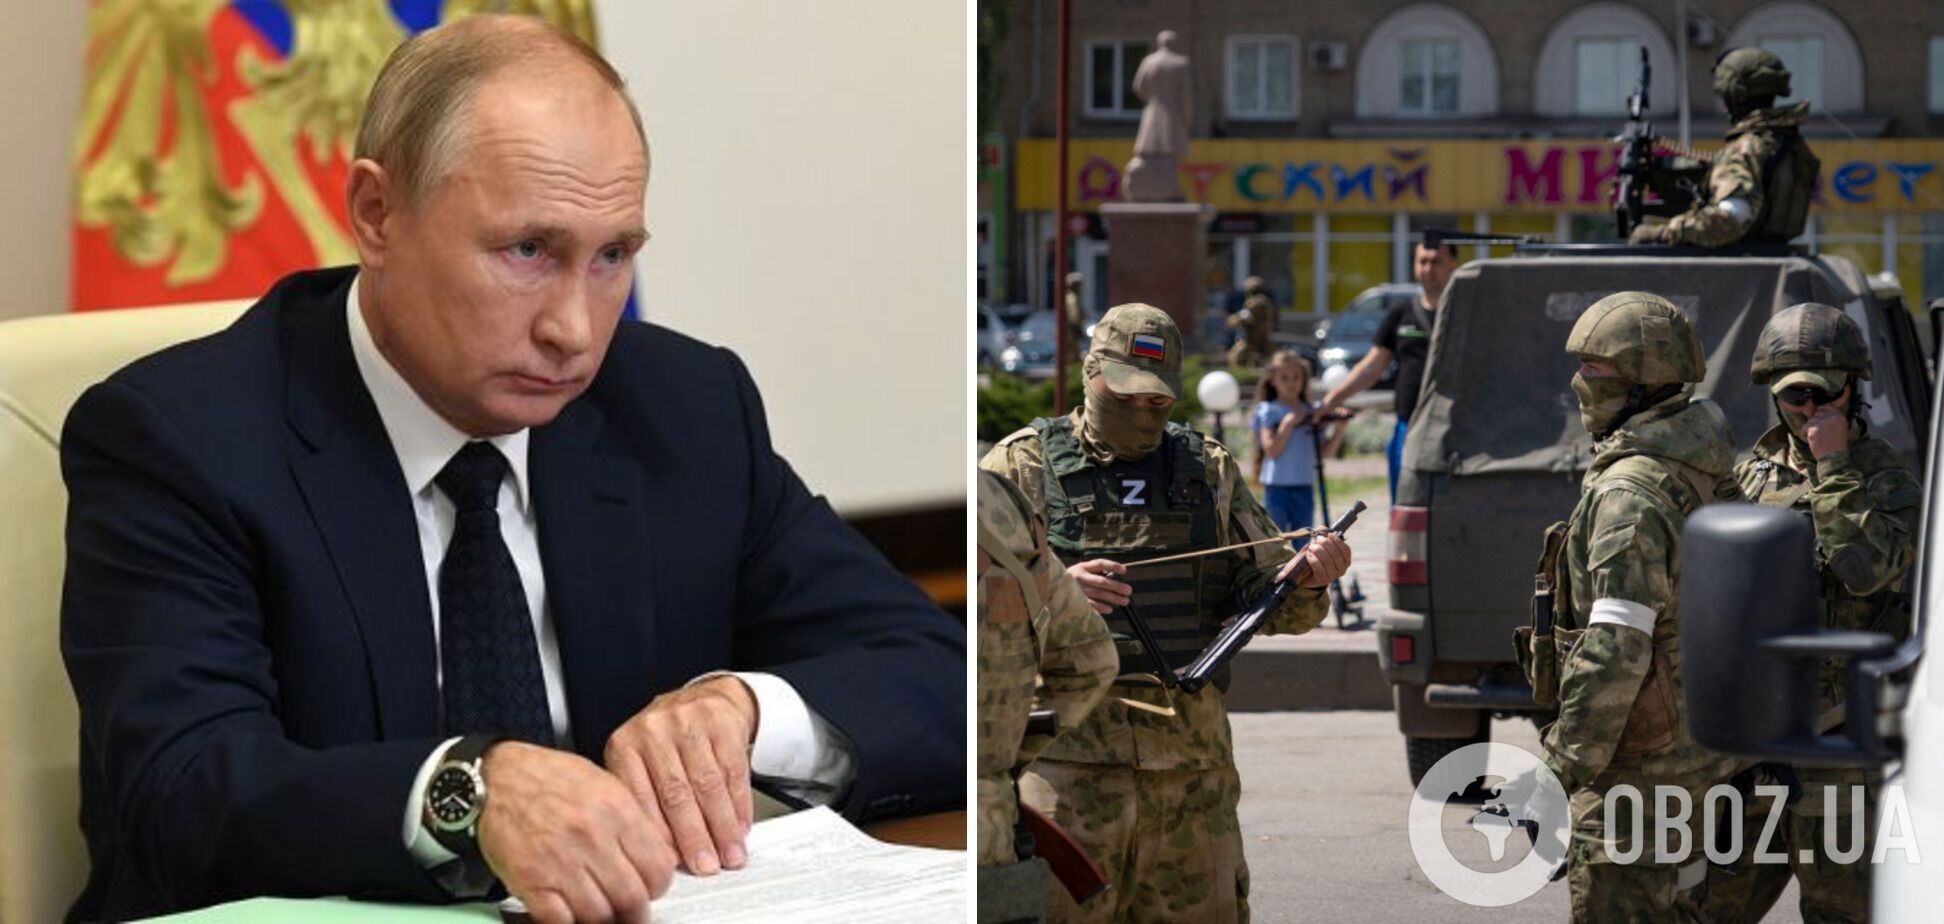 Президент России Владимир Путин обвинил США в 'затягивании' войны в Украине